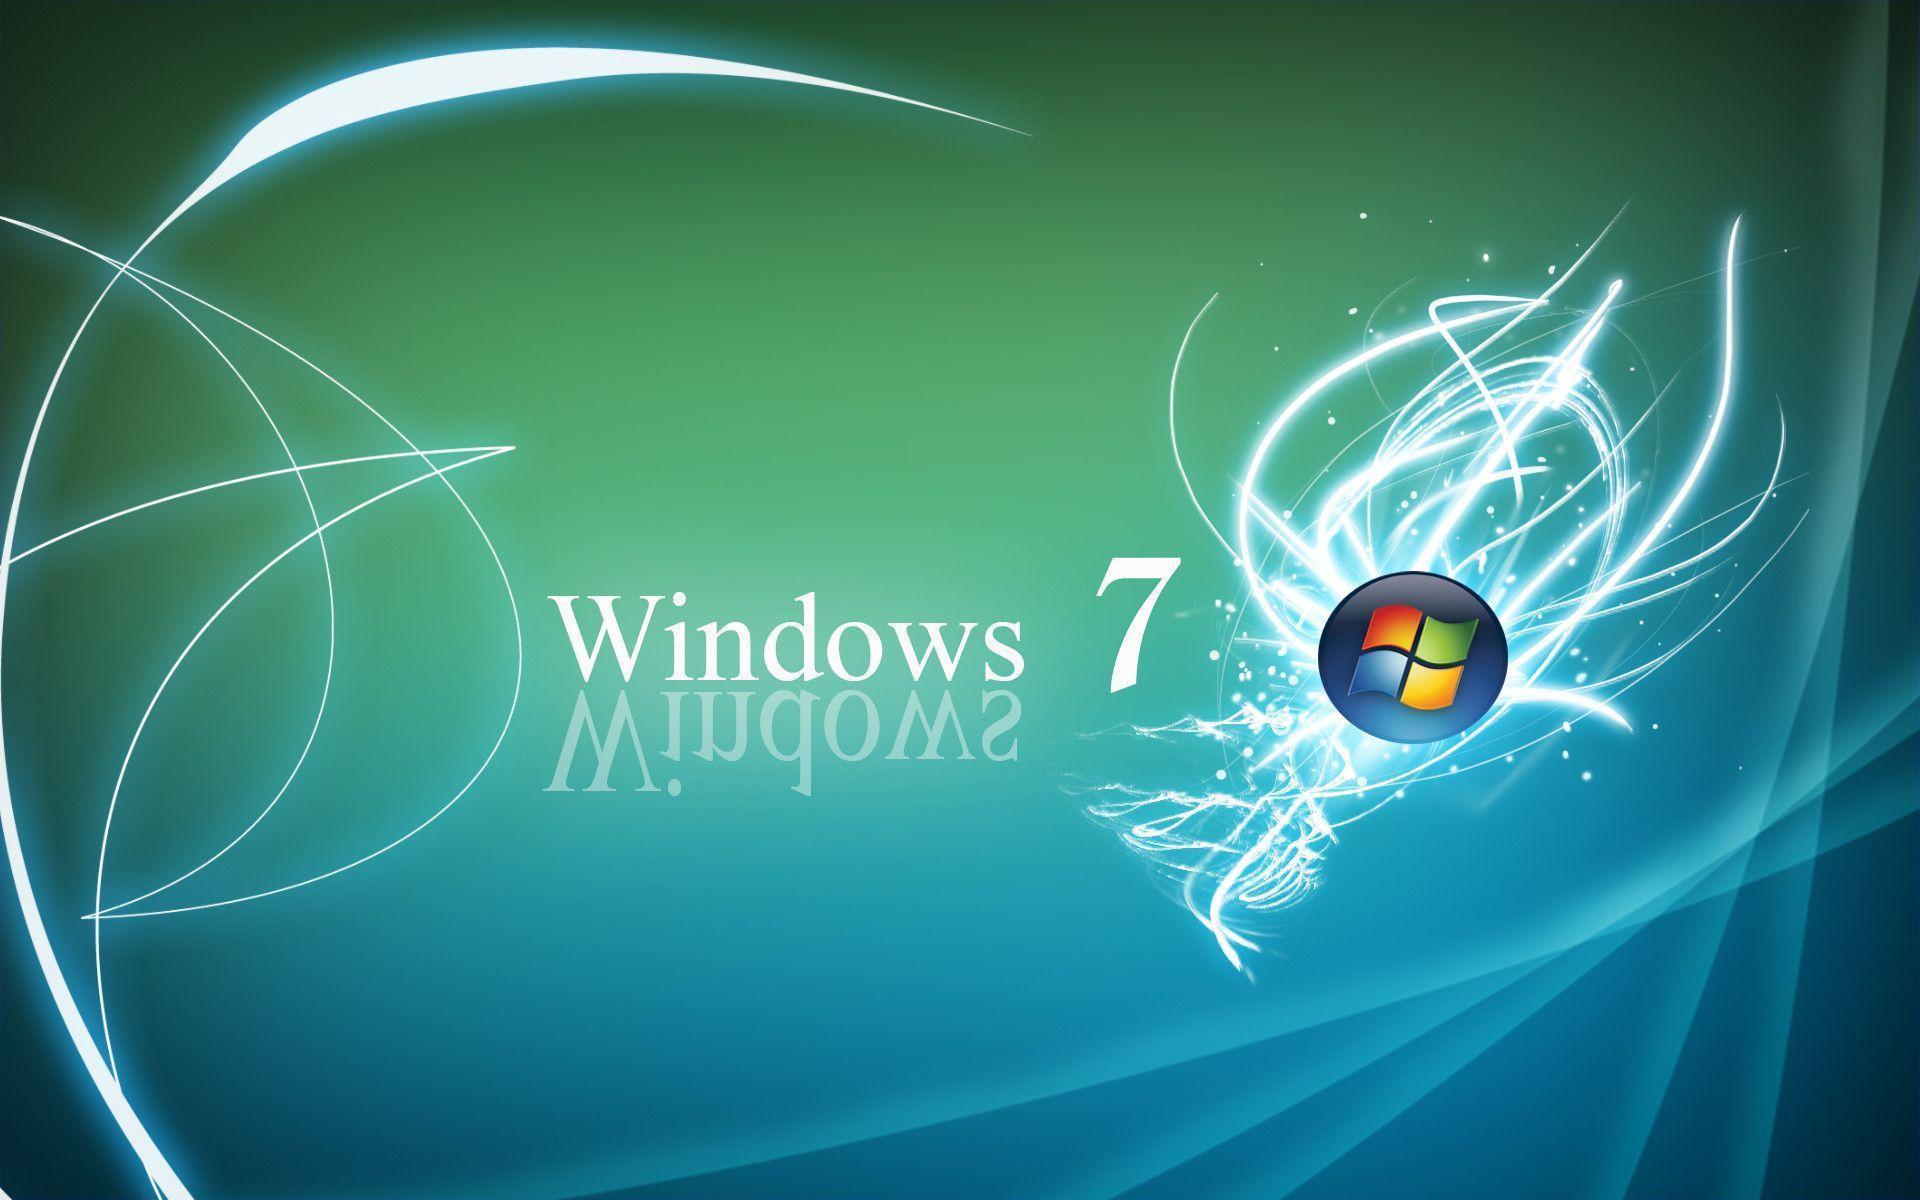 Download Windows 7 Desktop Backgrounds | Images and Photos finder